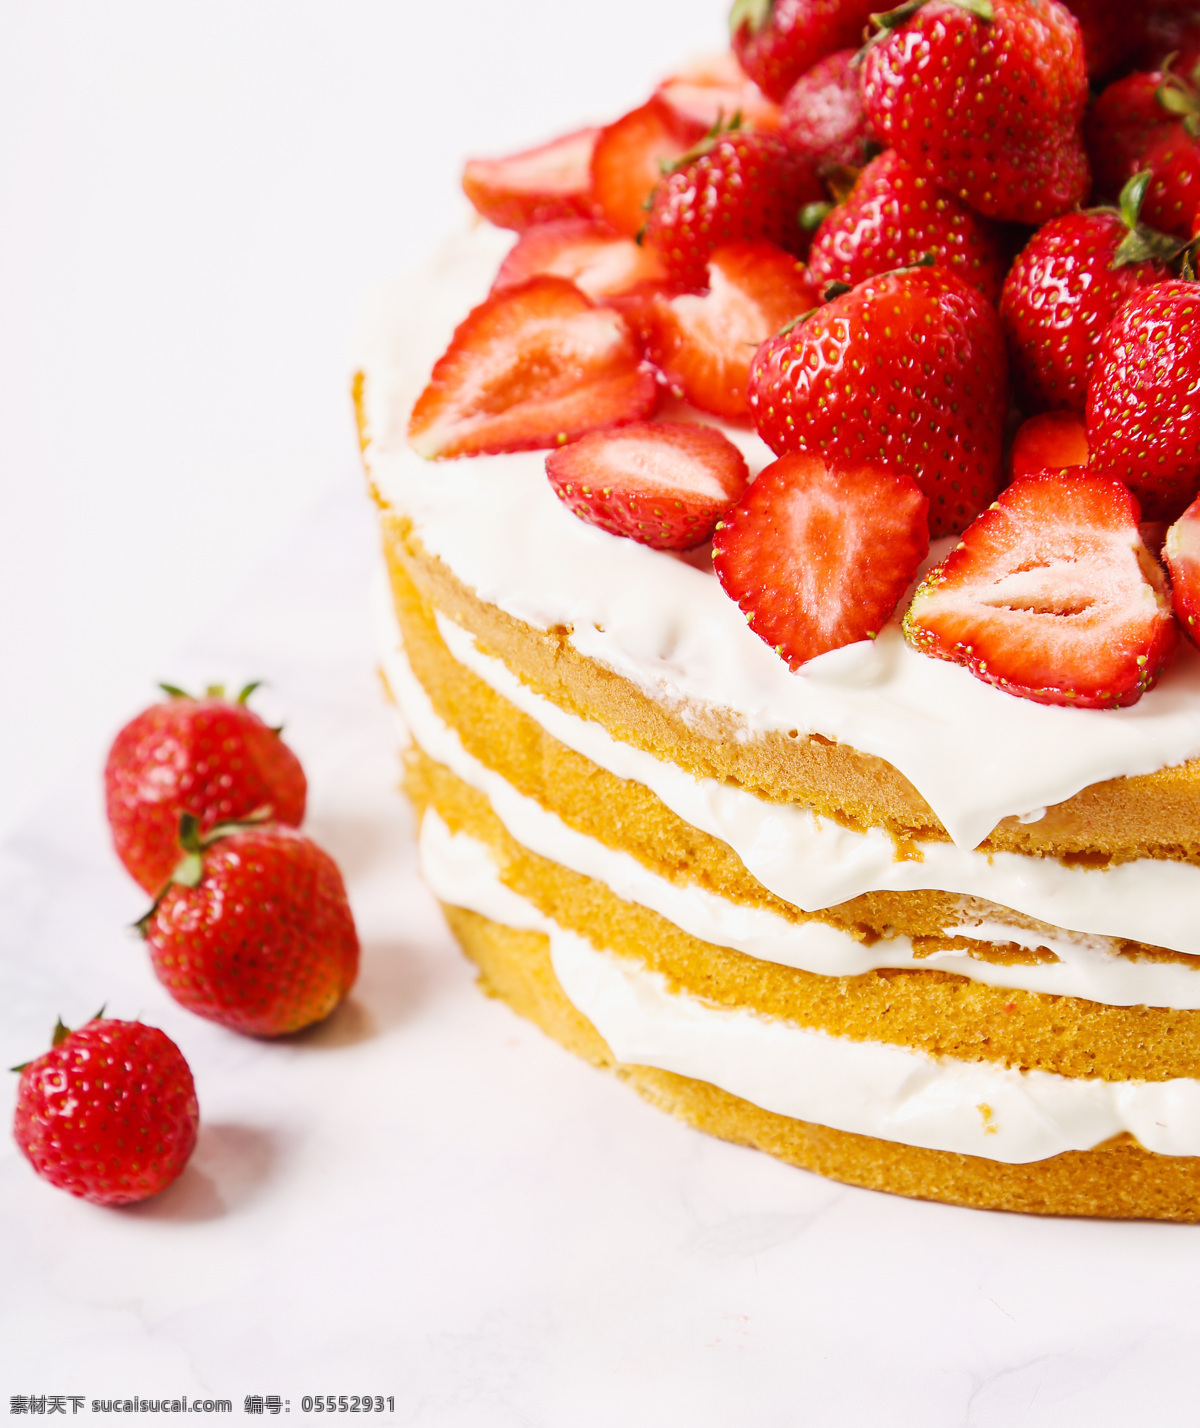 草莓 蛋糕 草莓蛋糕 水果蛋糕 糕点 甜品 美食 美味 食物摄影 生日蛋糕图片 餐饮美食